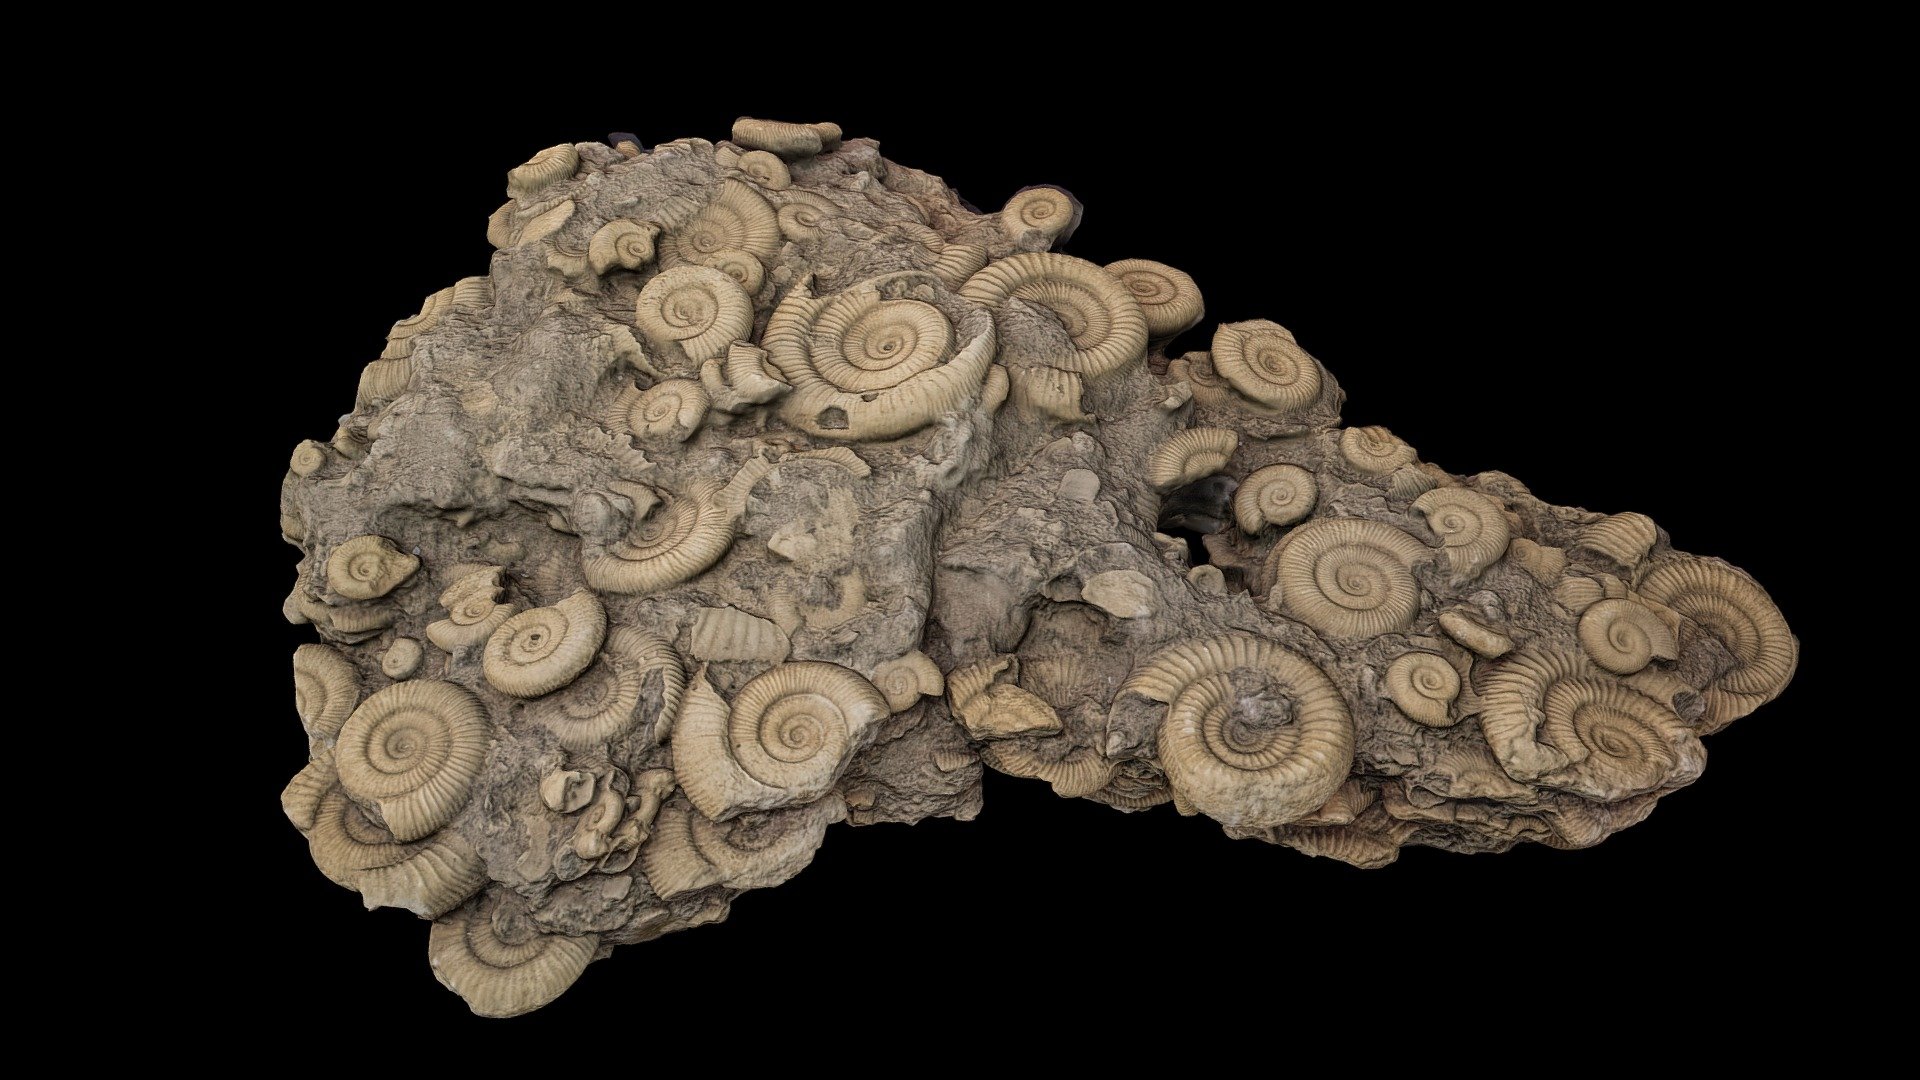 いわき市石炭化石館　ほるる
ダクテリオセラス(正常巻きアンモナイト)

時代：中世代ジュラ紀

産地：イギリス  

Ear : Jurassic period

Origin : UK

Collection in the Iwaki City Museum of Coal and Fossils(JP)

掲載確認済 - Ammonite - 3D model by Fuji (@fujisan) 3d model